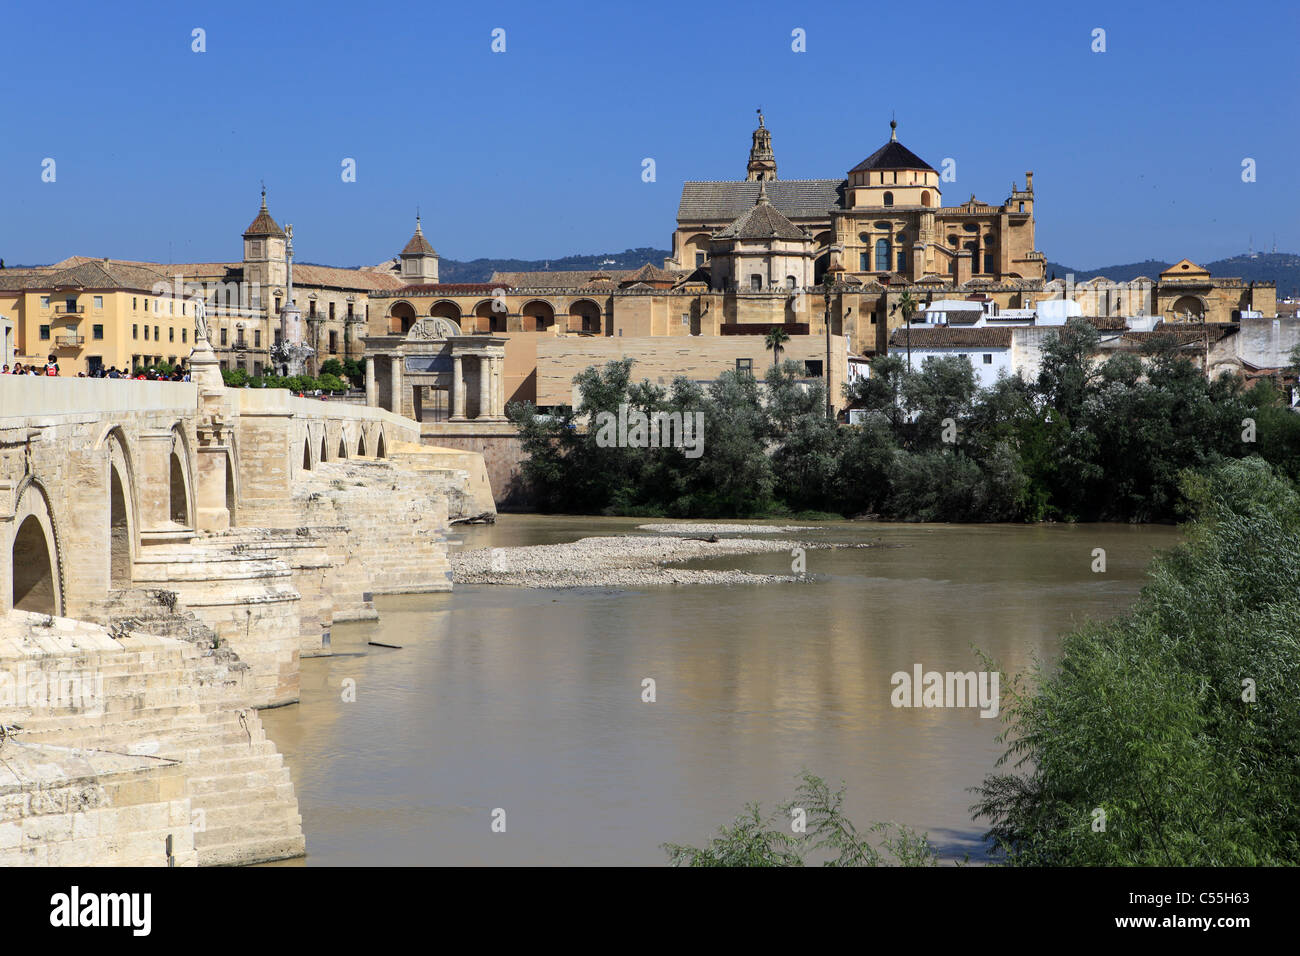 [Le Puente Romano] [Pont Romain] sur le [Rio Guadalquivir] Cordoue, Andalousie, Espagne, avec la mosquée Mezquita derrière Banque D'Images